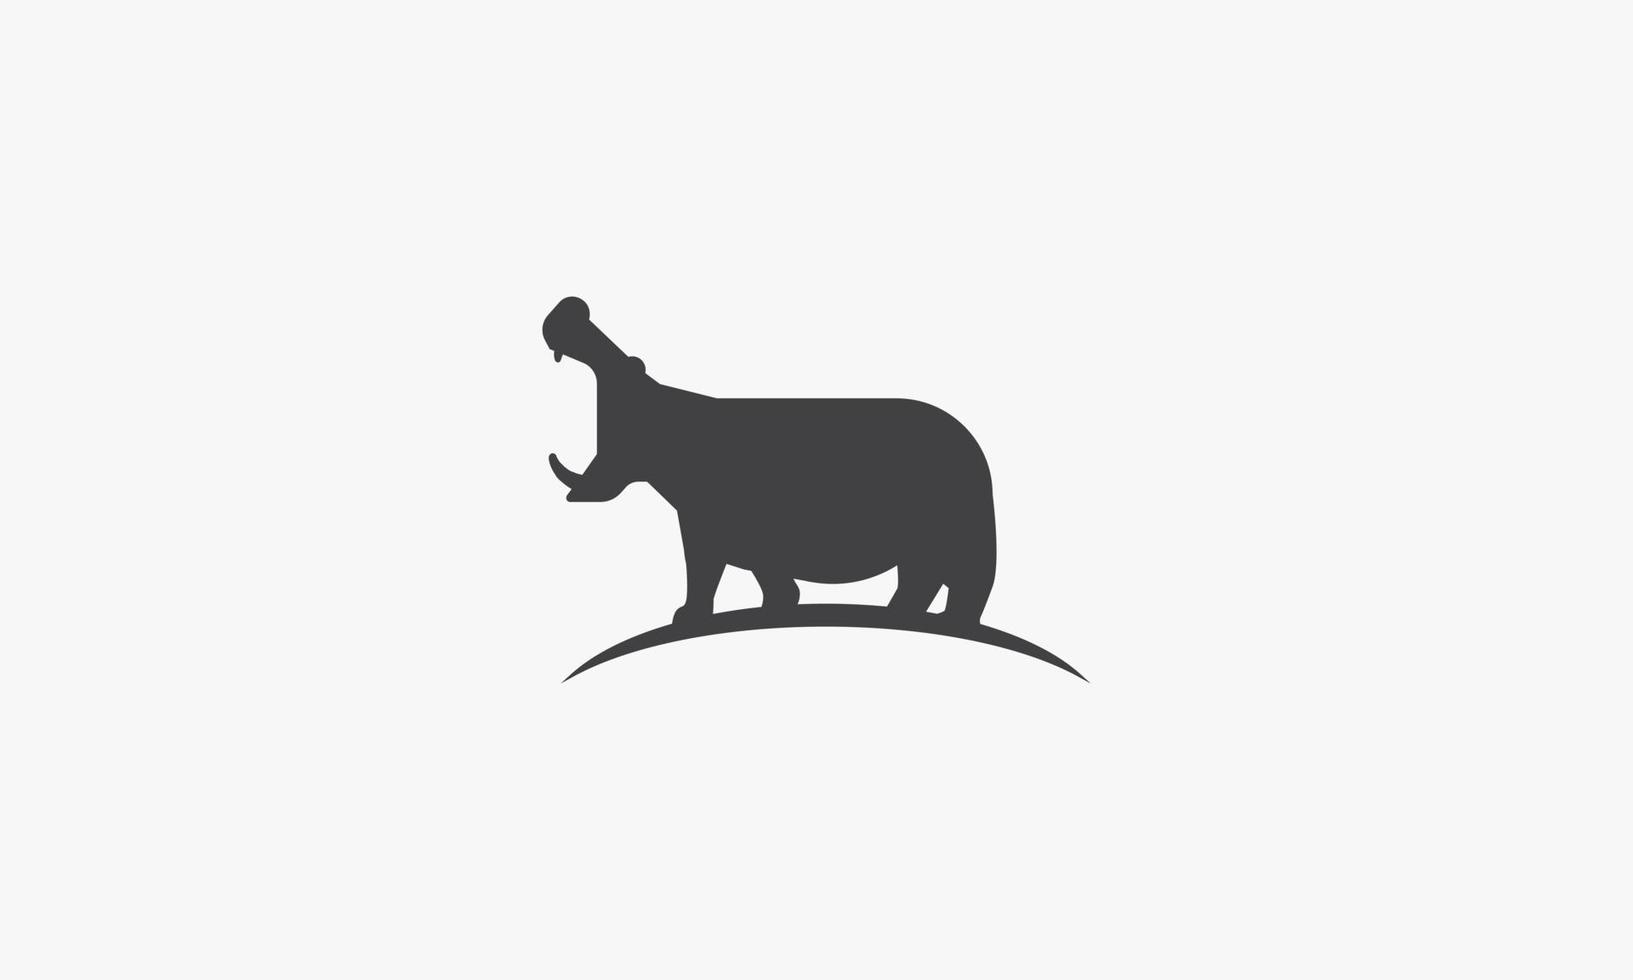 hippopotamus icon on white background. vector illustration.